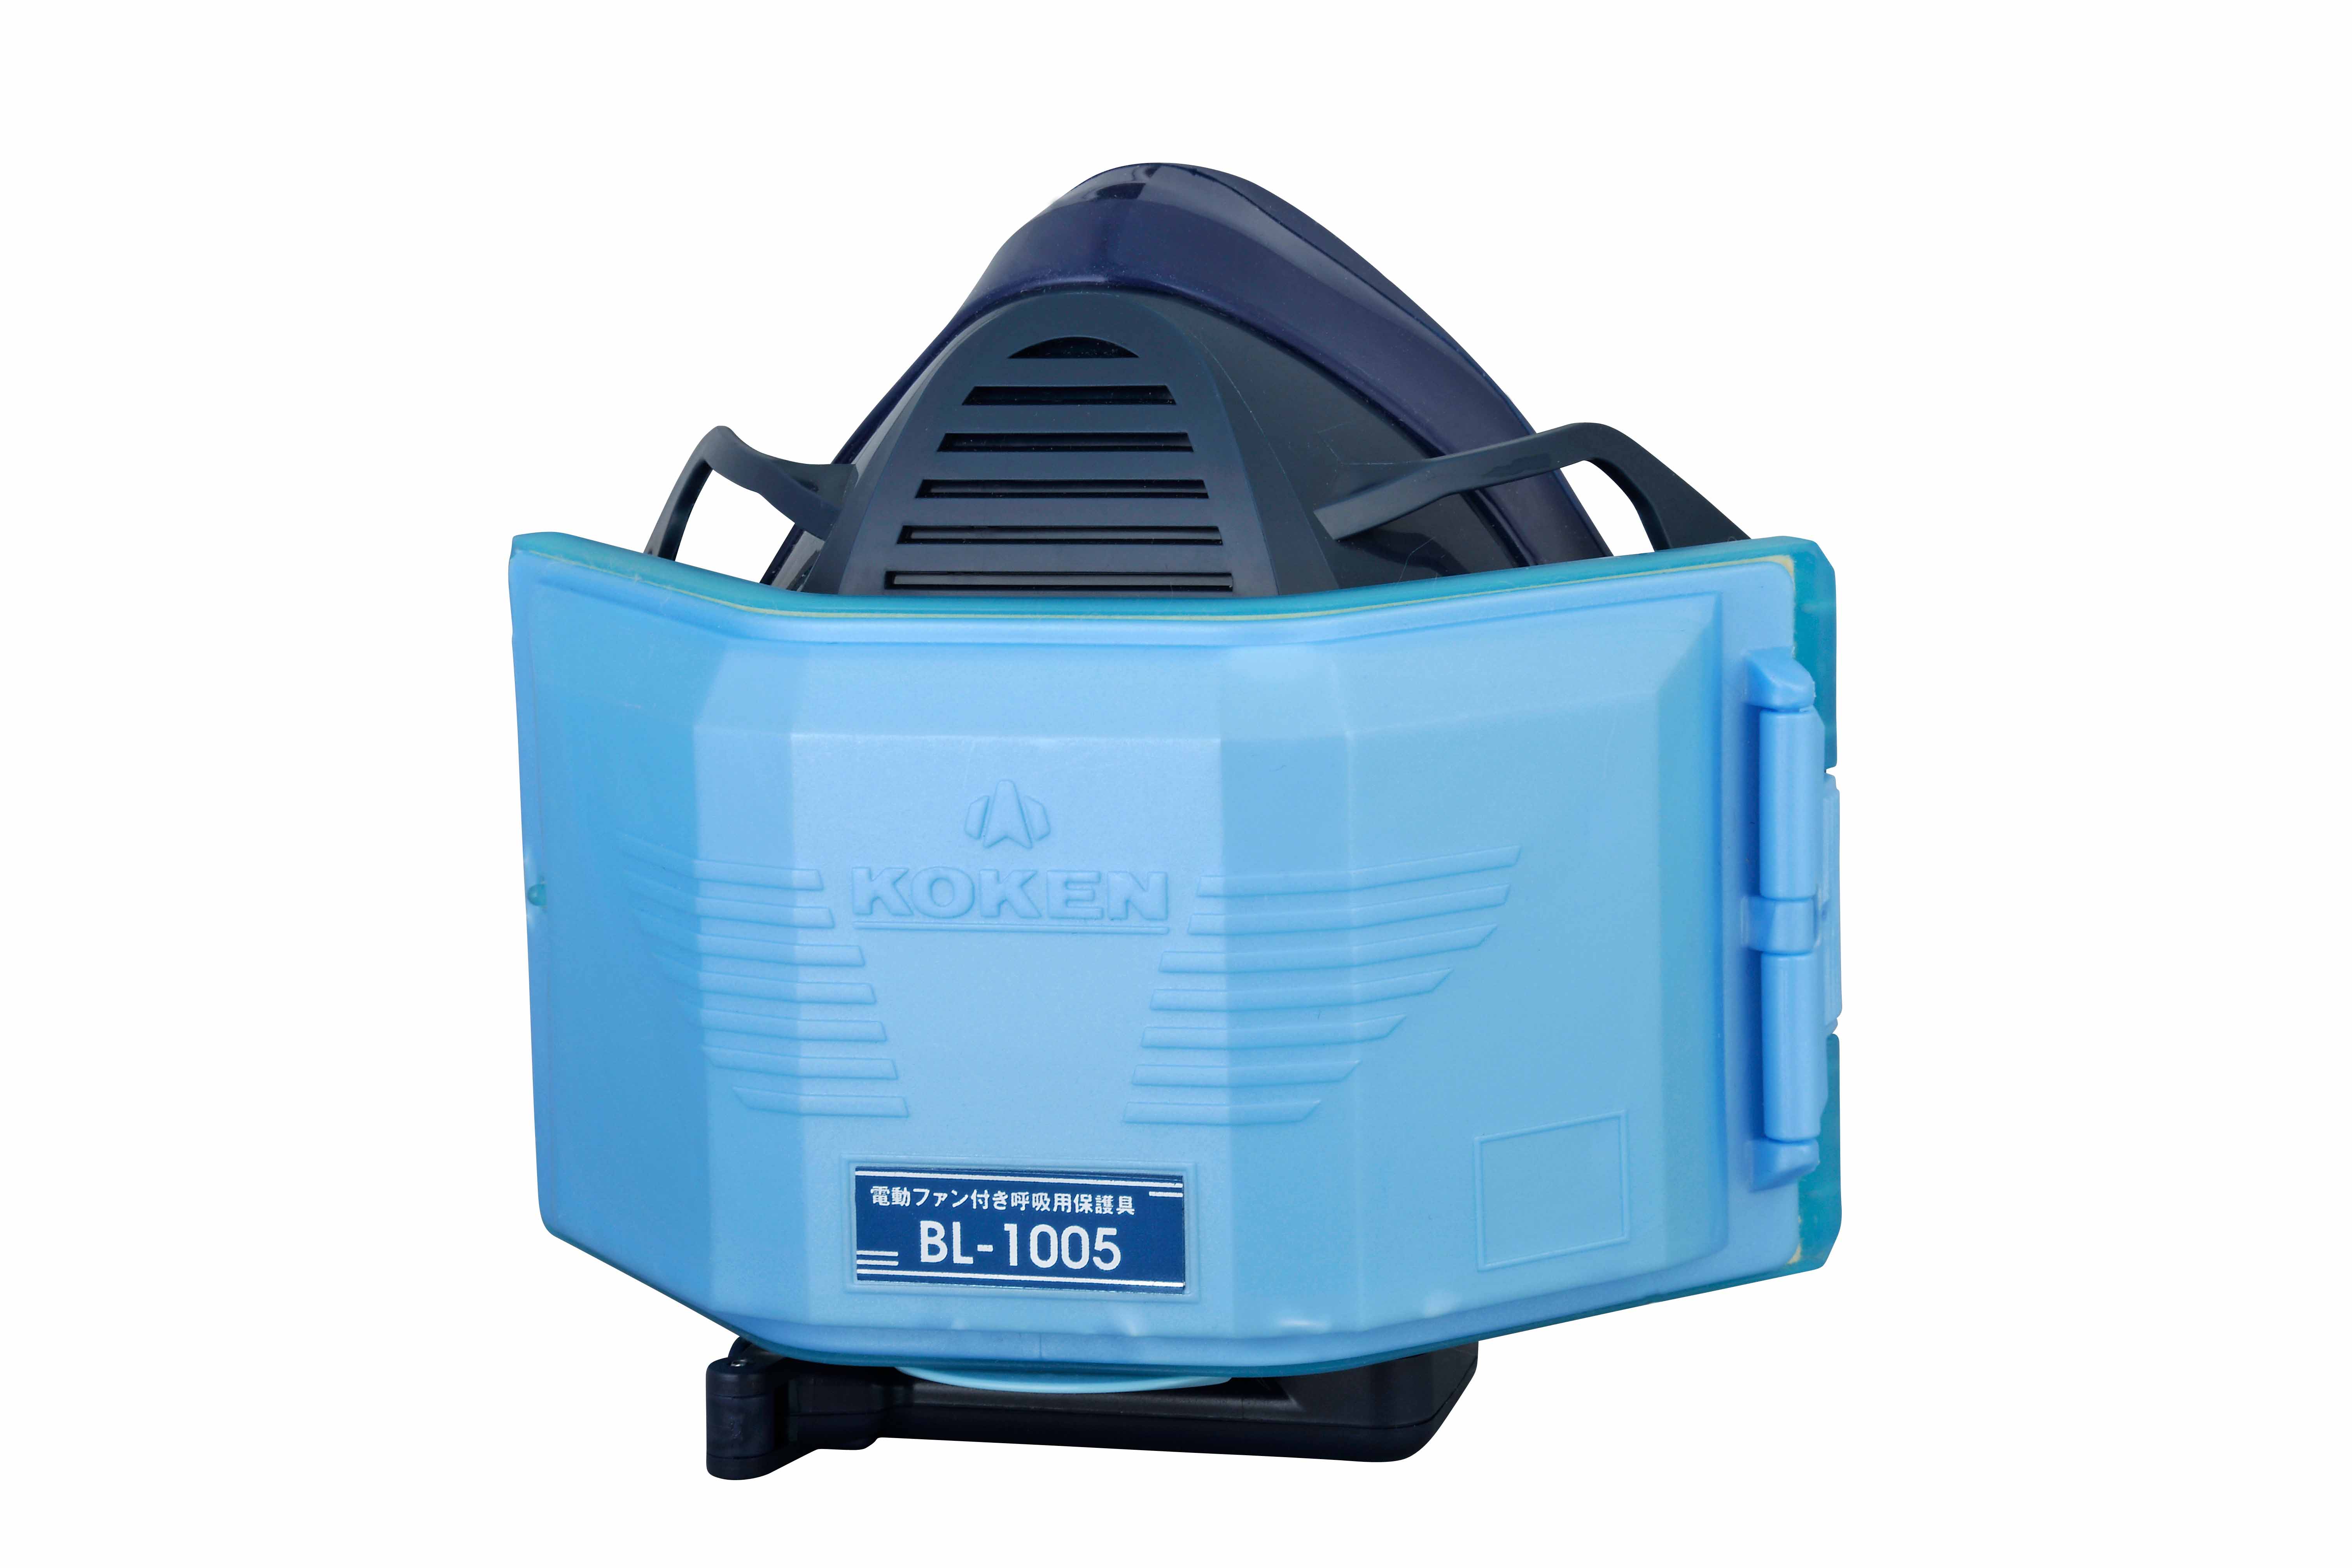 電動ファン付き呼吸用保護具 BL-1005 | 興研株式会社 | 溶接ナビ